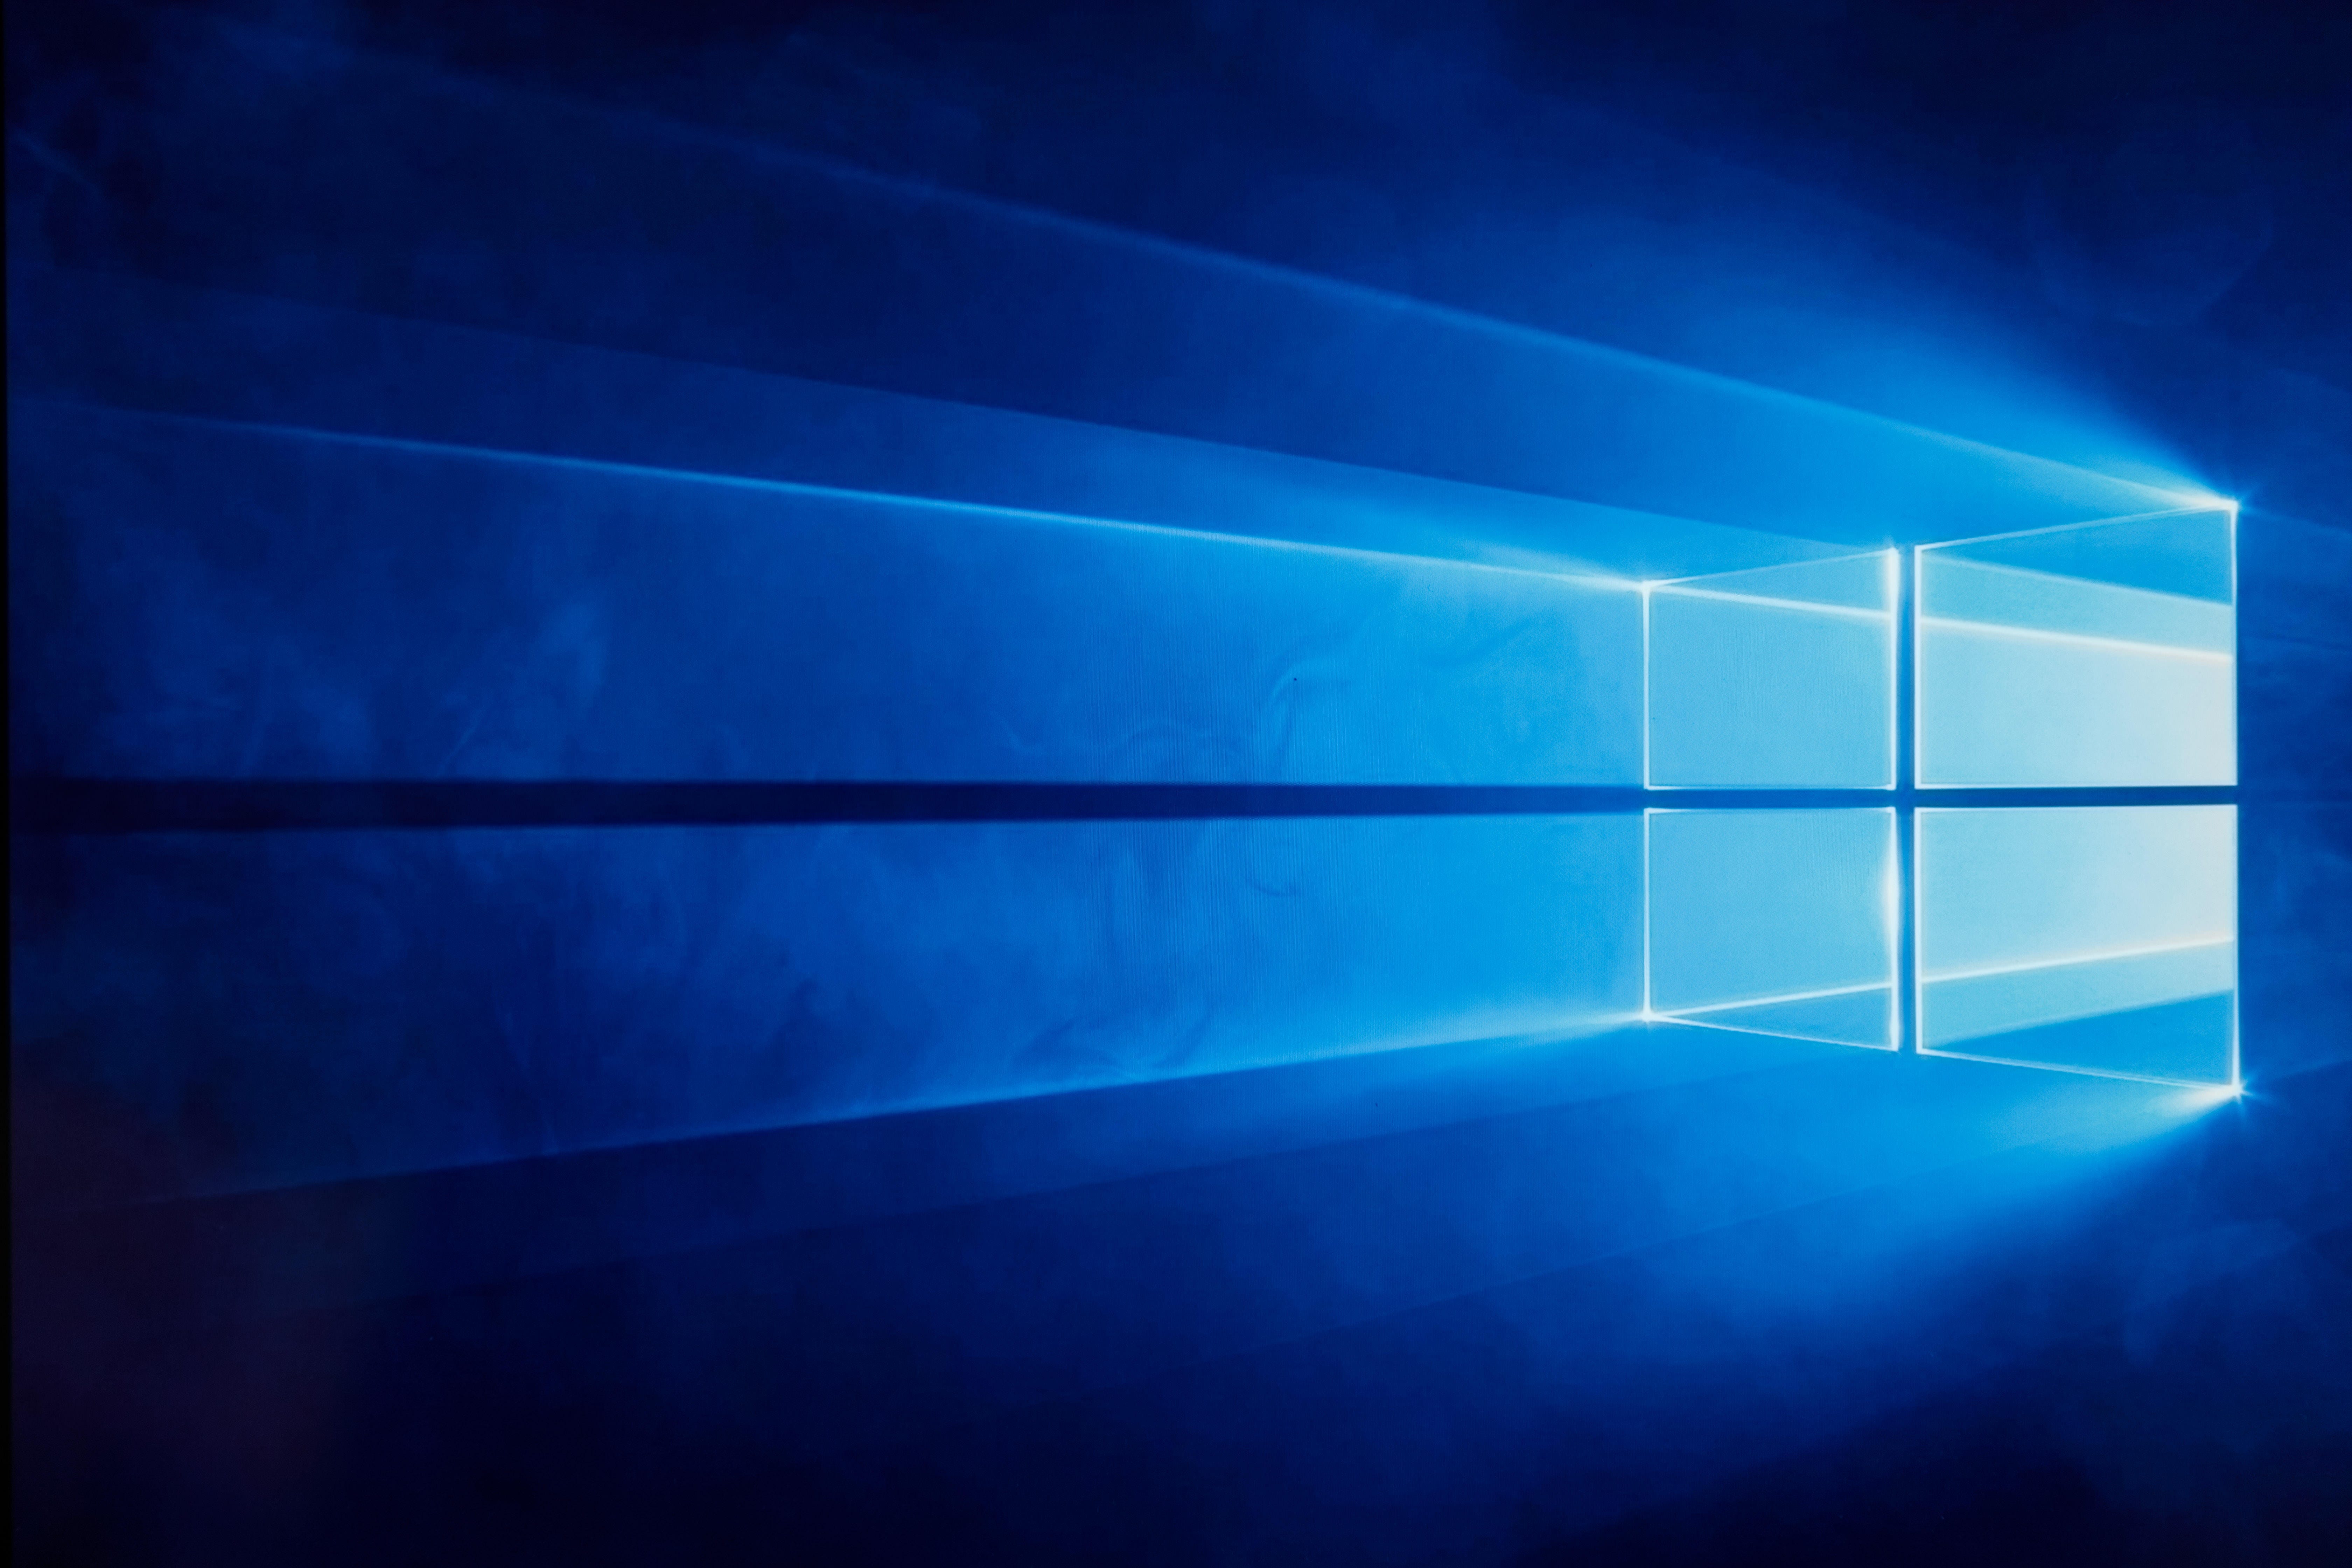 Bạn có muốn tăng độ sáng cho màn hình và giảm ánh sáng xanh khi sử dụng máy tính vào ban đêm? Hãy xem hình ảnh Chế độ tối Windows 10 để biết cách bật chế độ này trên máy tính của bạn.